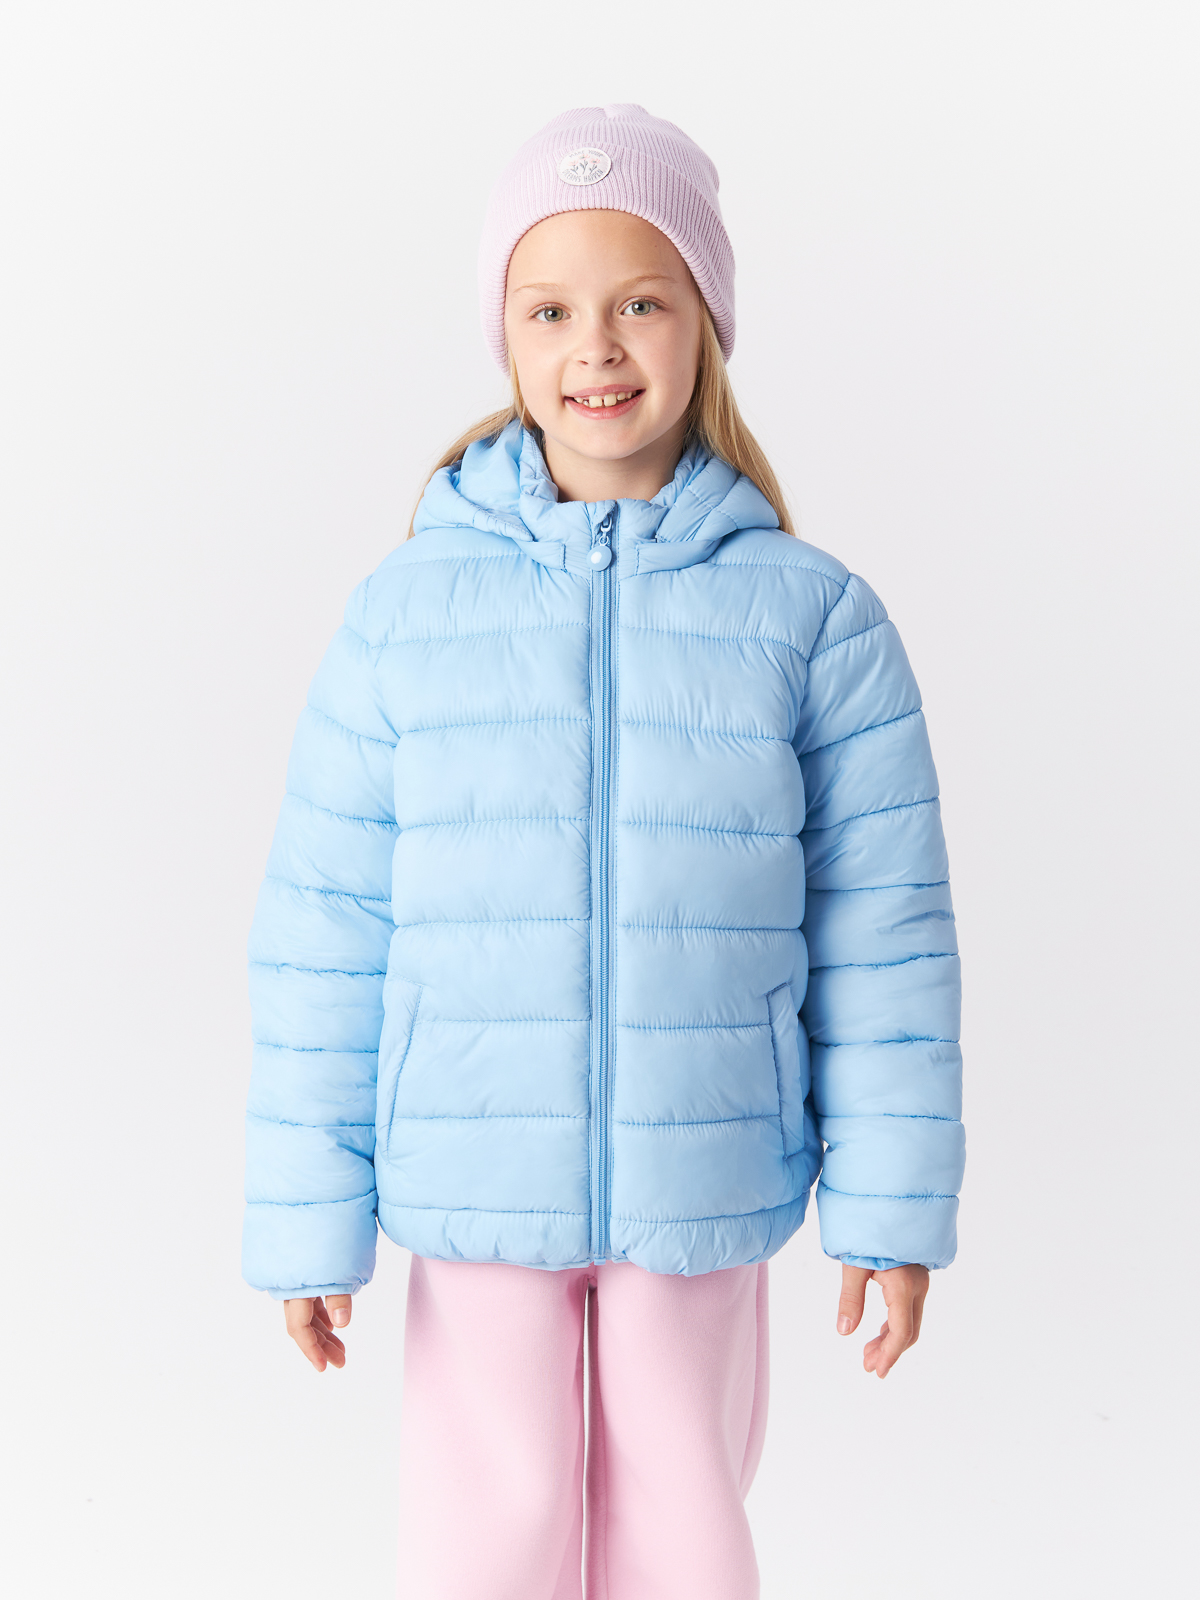 Куртка Mcstyles для девочки, размер 152, SMM14, голубая